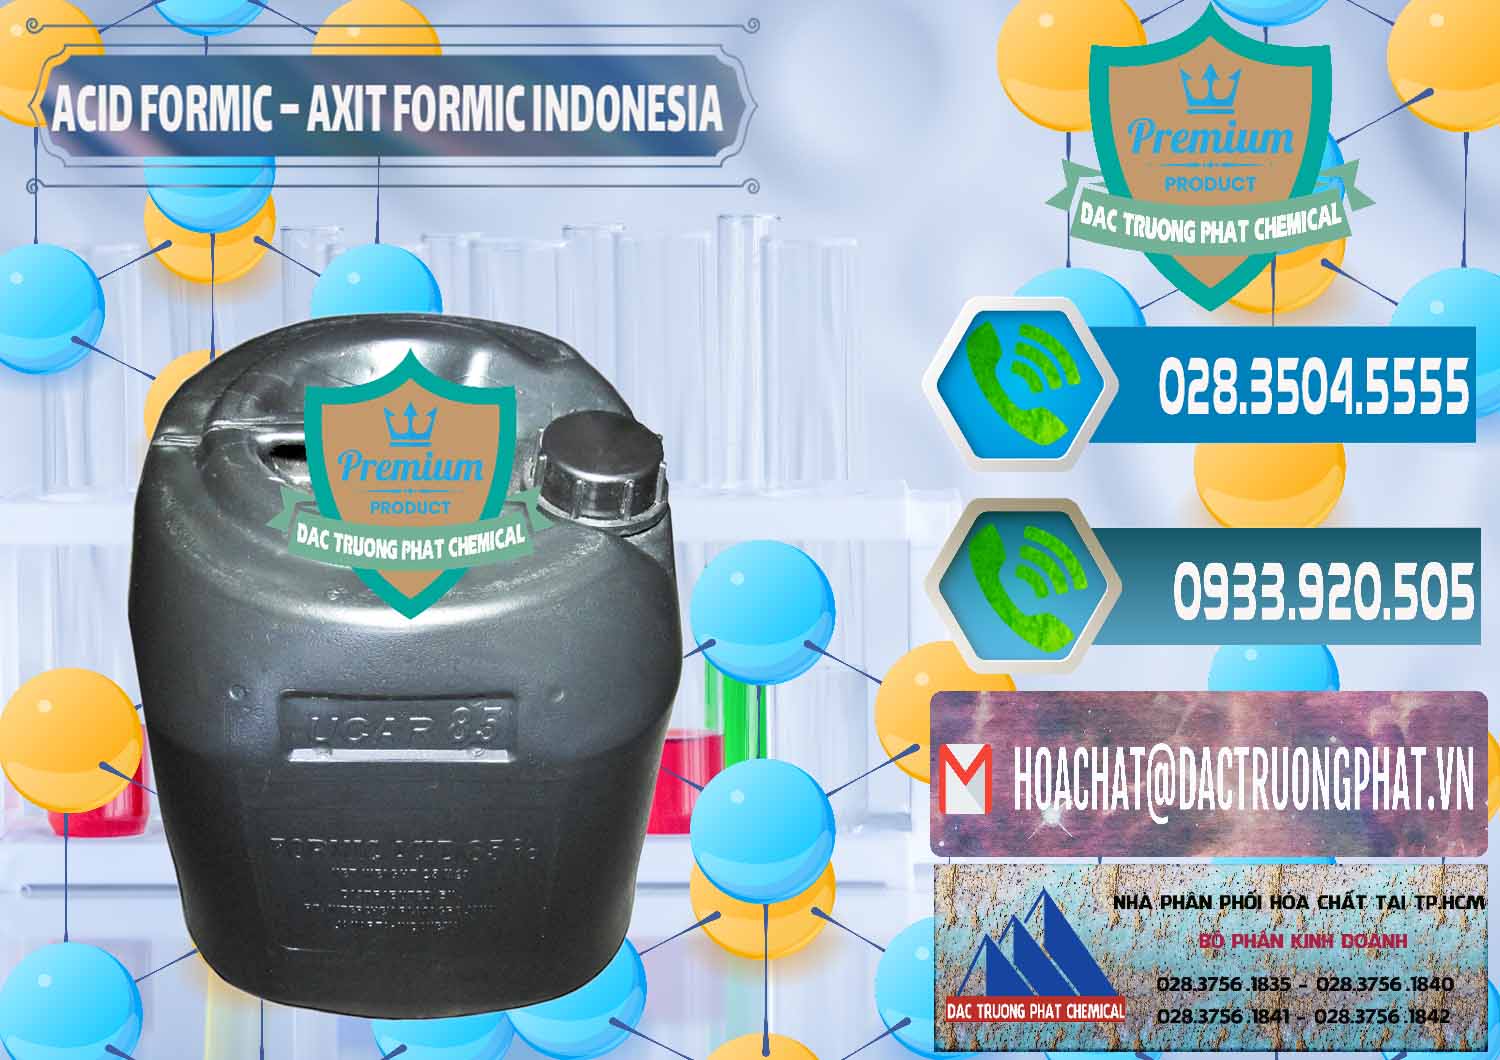 Cty chuyên bán & phân phối Acid Formic - Axit Formic Indonesia - 0026 - Nhập khẩu và phân phối hóa chất tại TP.HCM - congtyhoachat.net